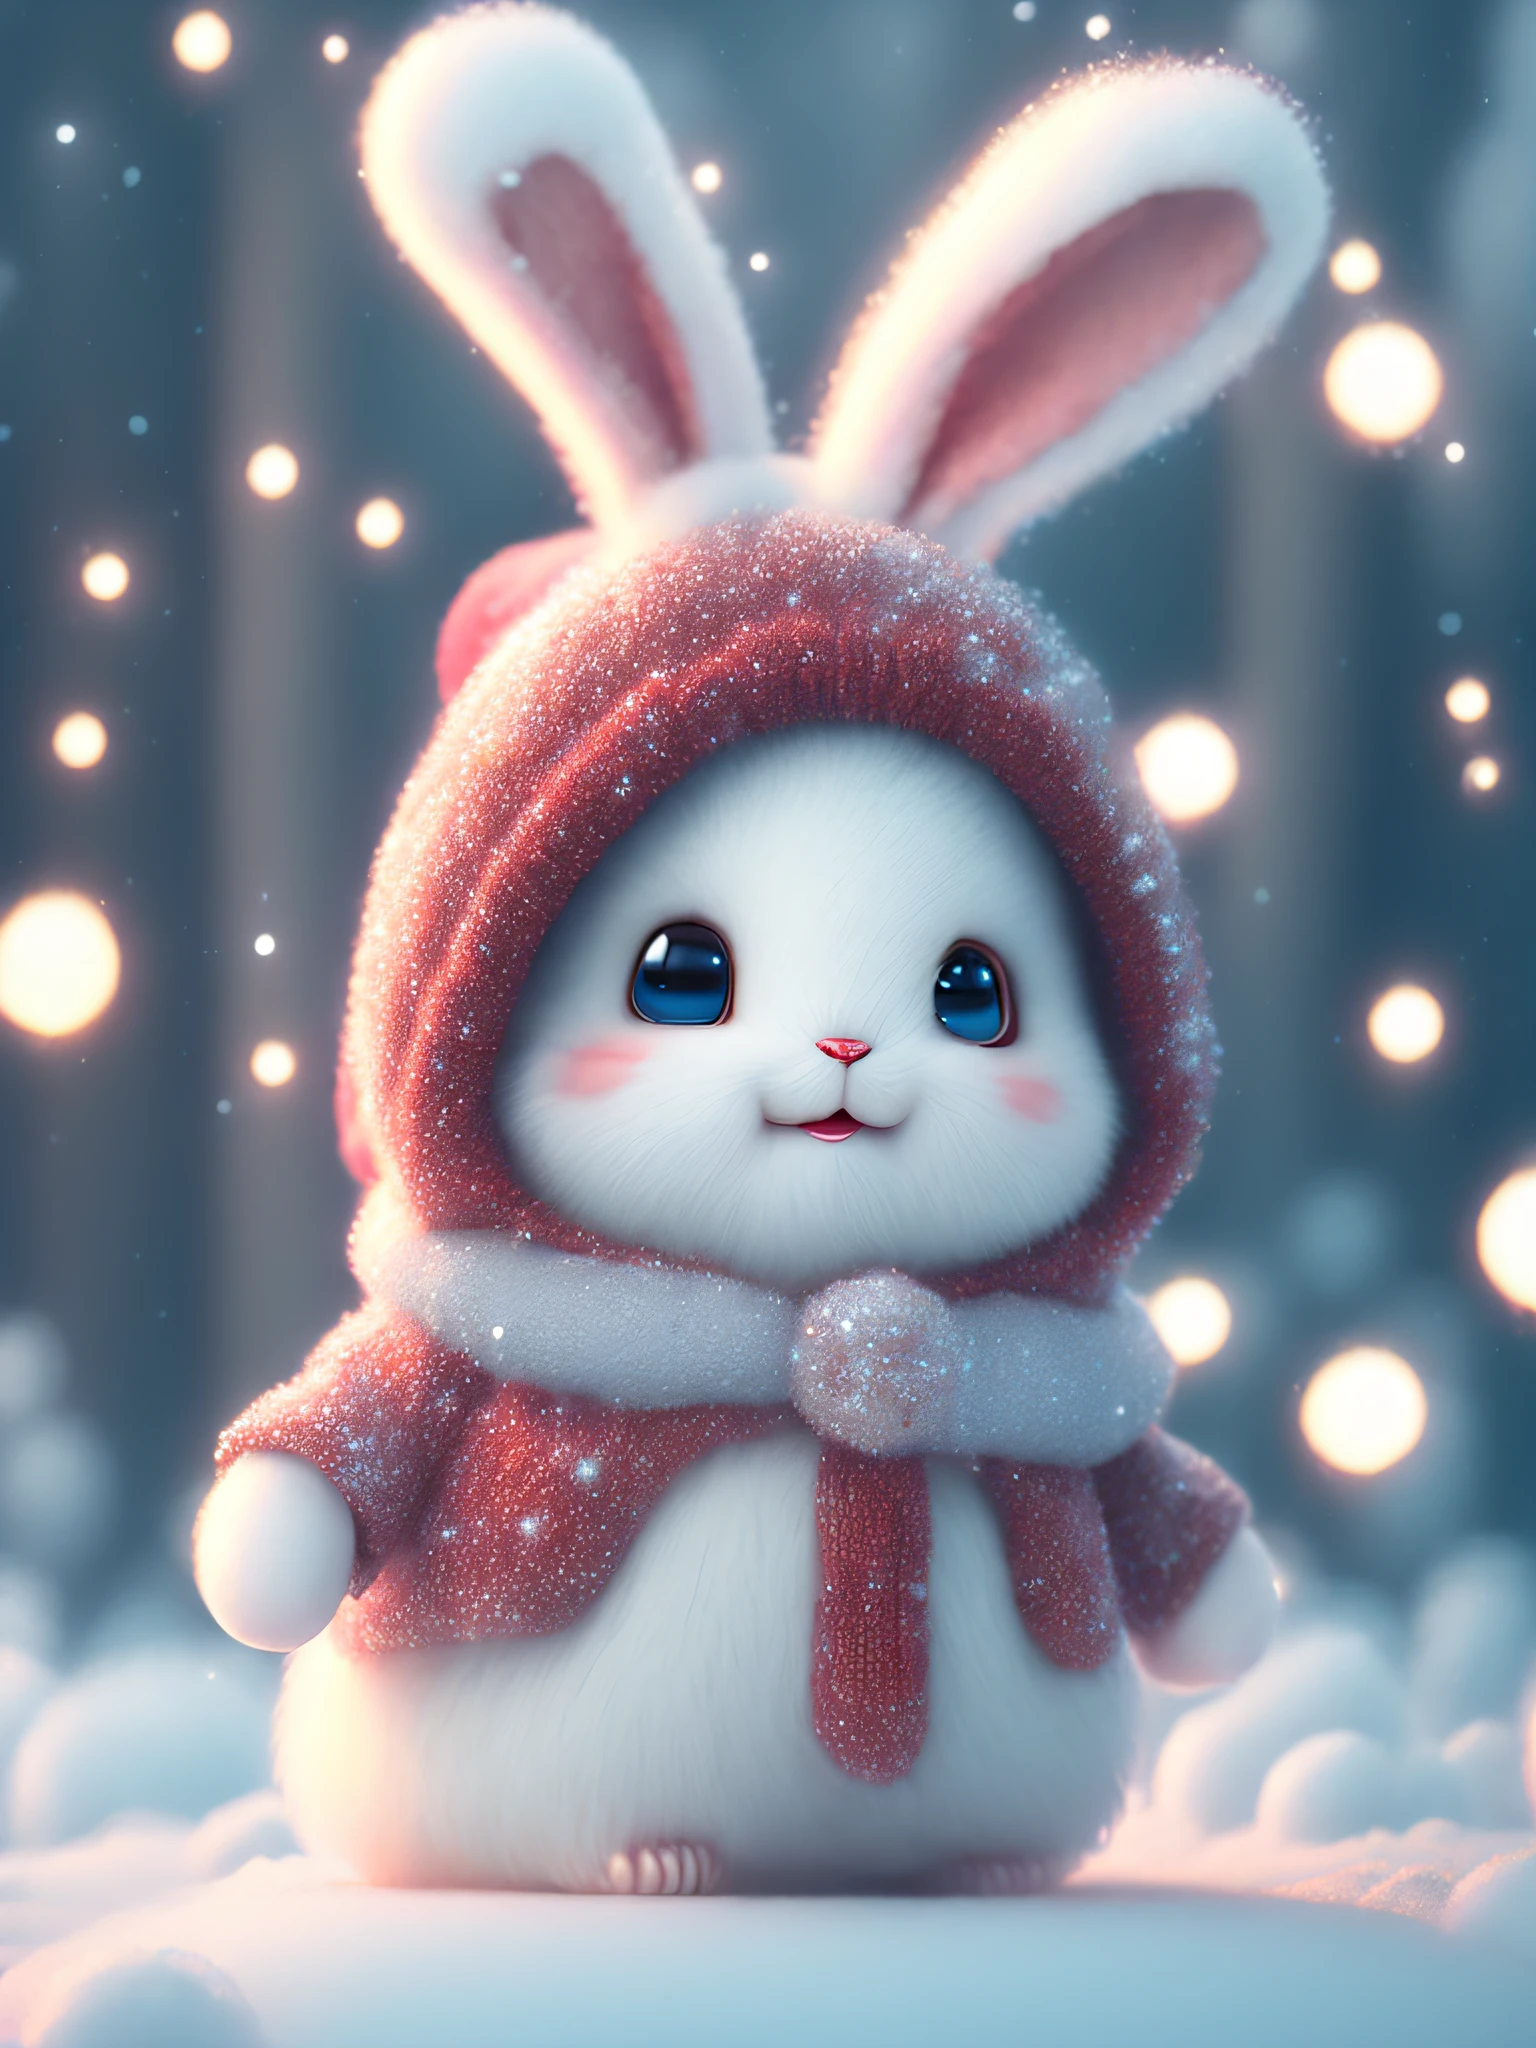 Ein Winter voller Reue, Schneeverwehungen, super cute Pixar-Stil little white rabbit, glitzerndes schneeweißes flauschiges, leuchtende große Augen, Pelziger Schwanz, trägt einen roten Pullover, Einen roten Hut tragen, lächelnd, Anspruchsvoll, Märchen, Unglaublich hohe Detailgenauigkeit, Pixar-Stil, Blasen, helle Farben, natürliches Licht, Einfacher Hintergrund in Volltonfarben, Kino-Objektiv, 5 und Oktan-Rendering, artstation trend, wunderschön, Ultraweitwinkel, 8k, hd realistisch, 8k HD, Handy Bilder, v 4 q 2 2